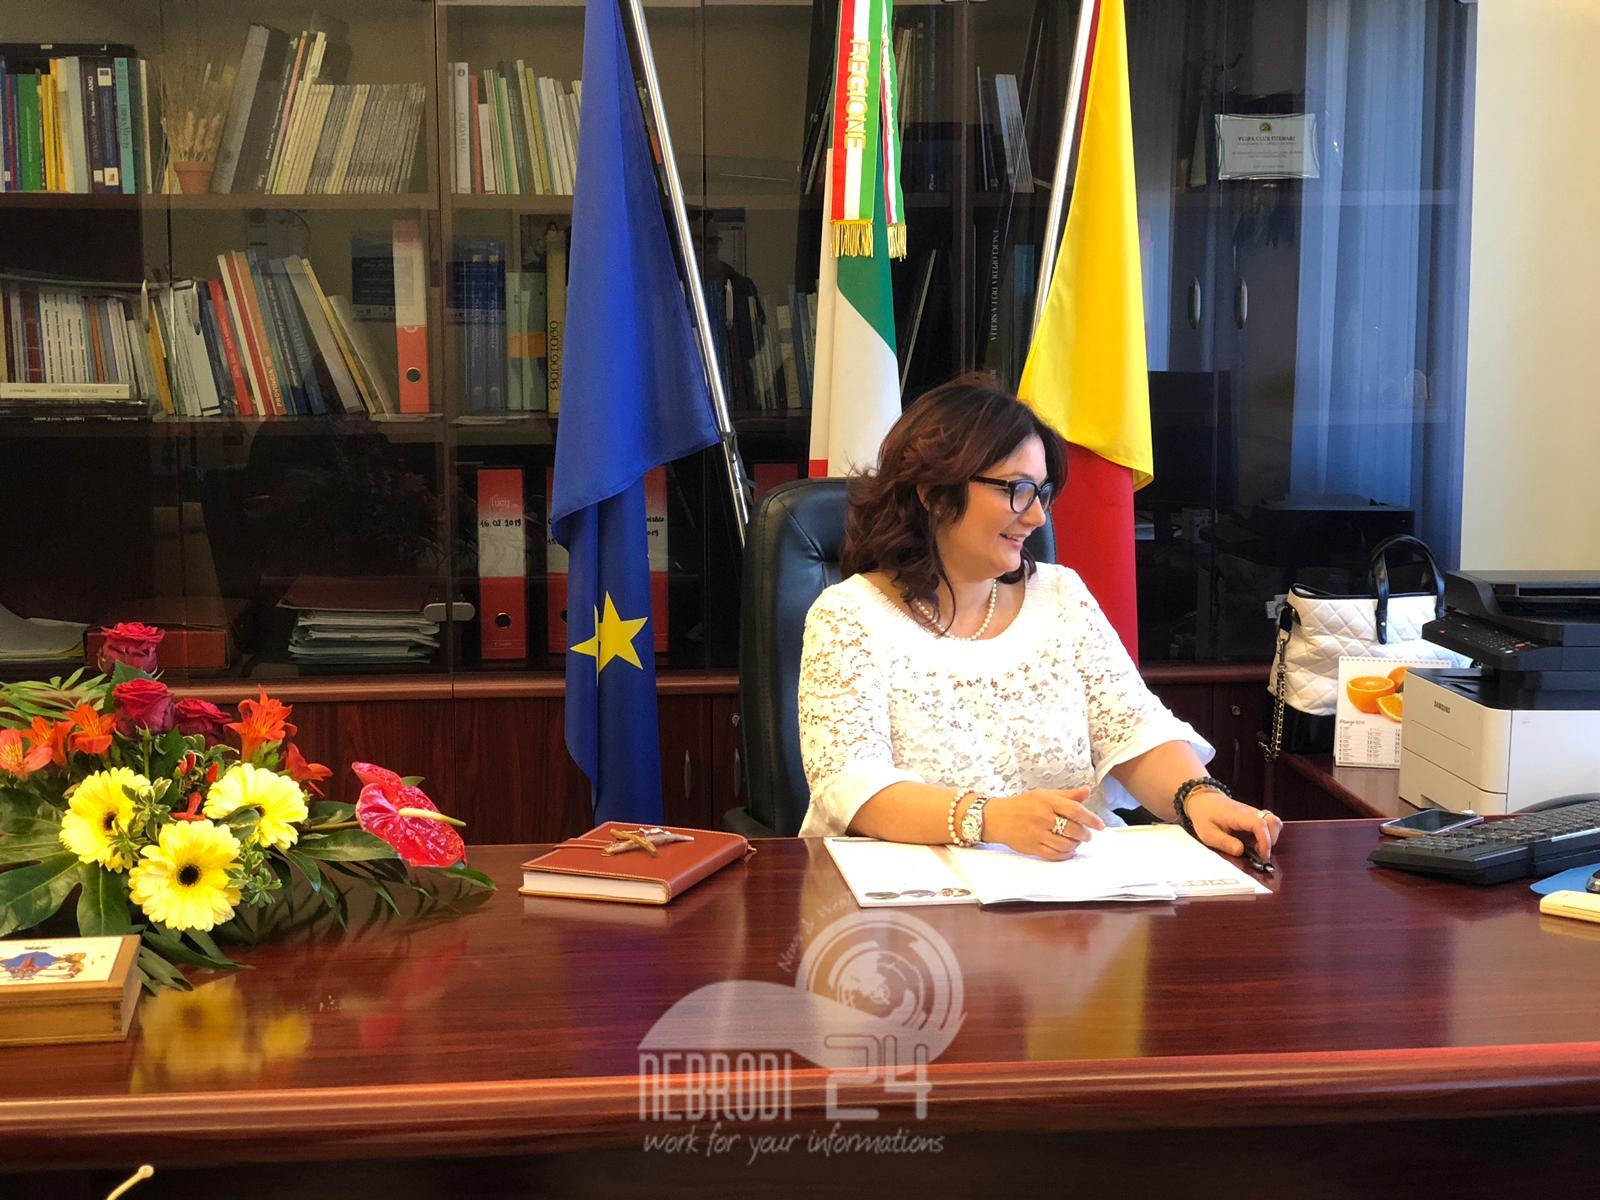 Brolo – Elezioni: Irene Ricciardello ricandidata  a sindaco. “Al servizio ma non per fare carriera politica” (video)